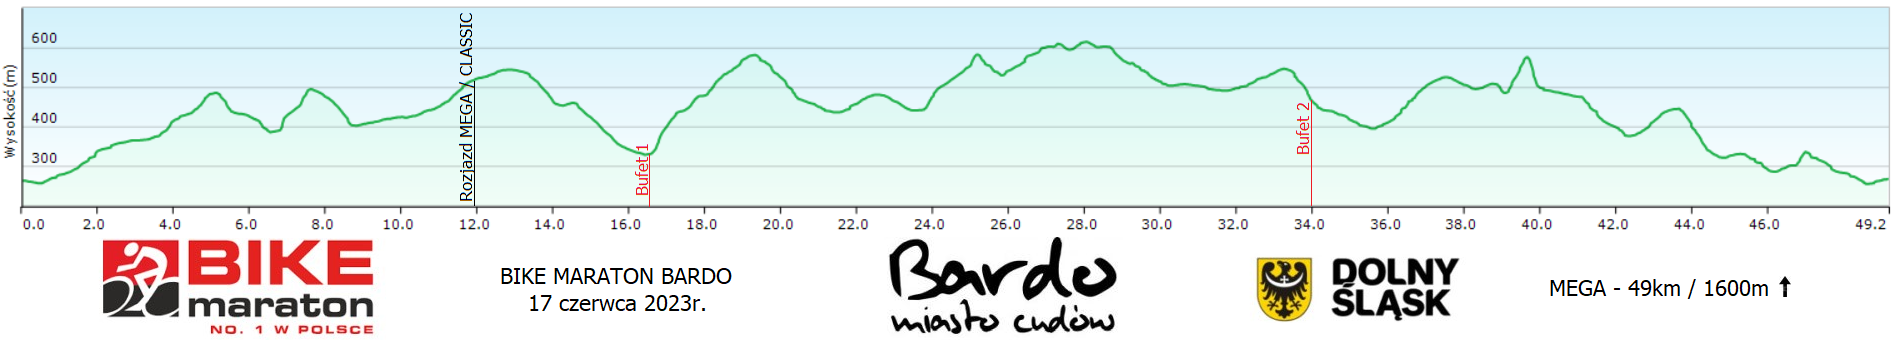 Bike Maraton Bardo 2023